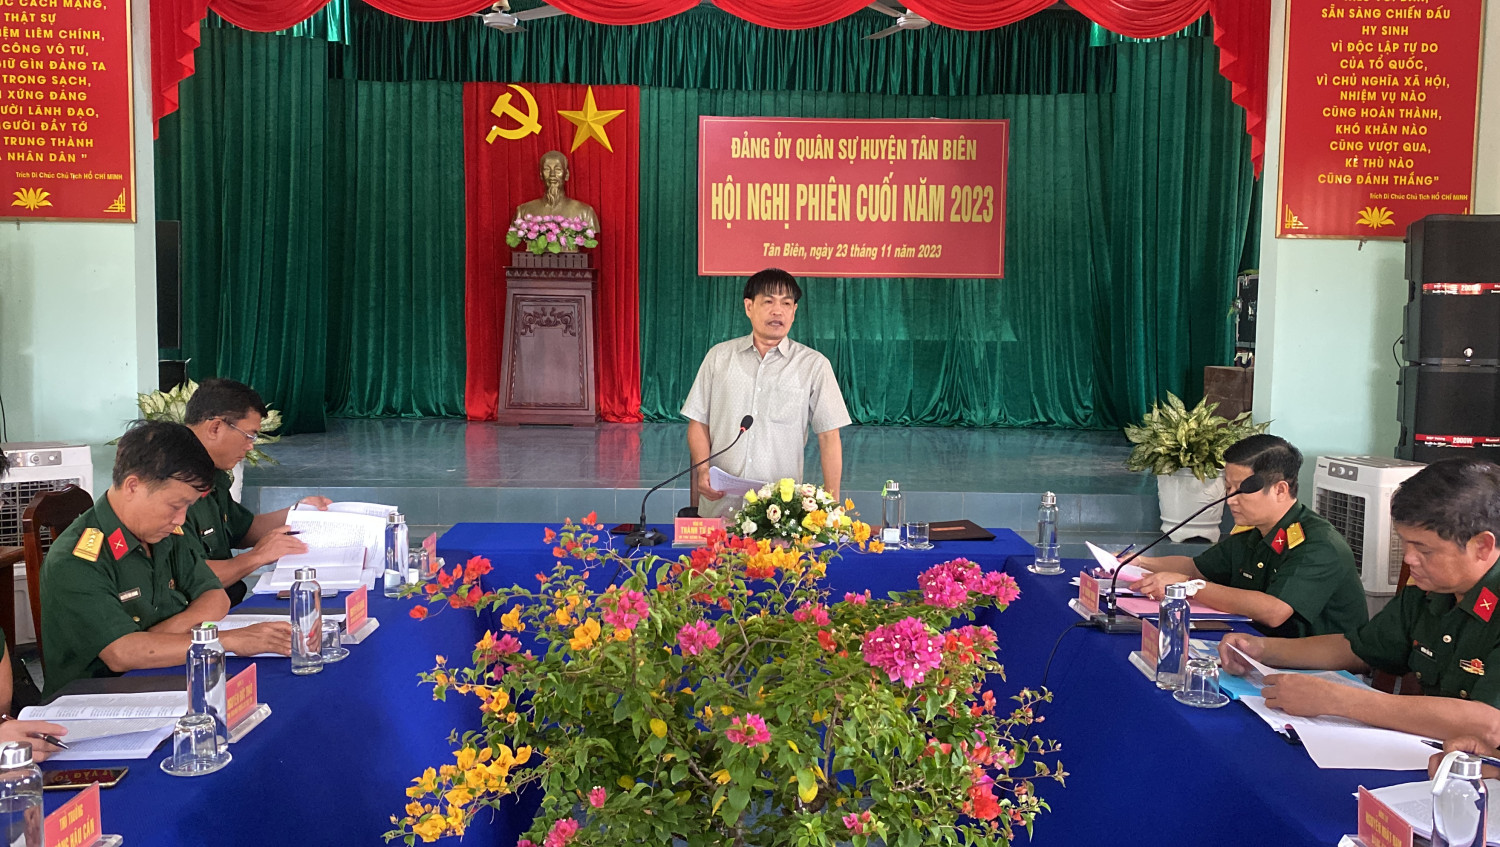 Đảng uỷ Ban CHQS huyện Tân Biên hội nghị phiên cuối năm 2023